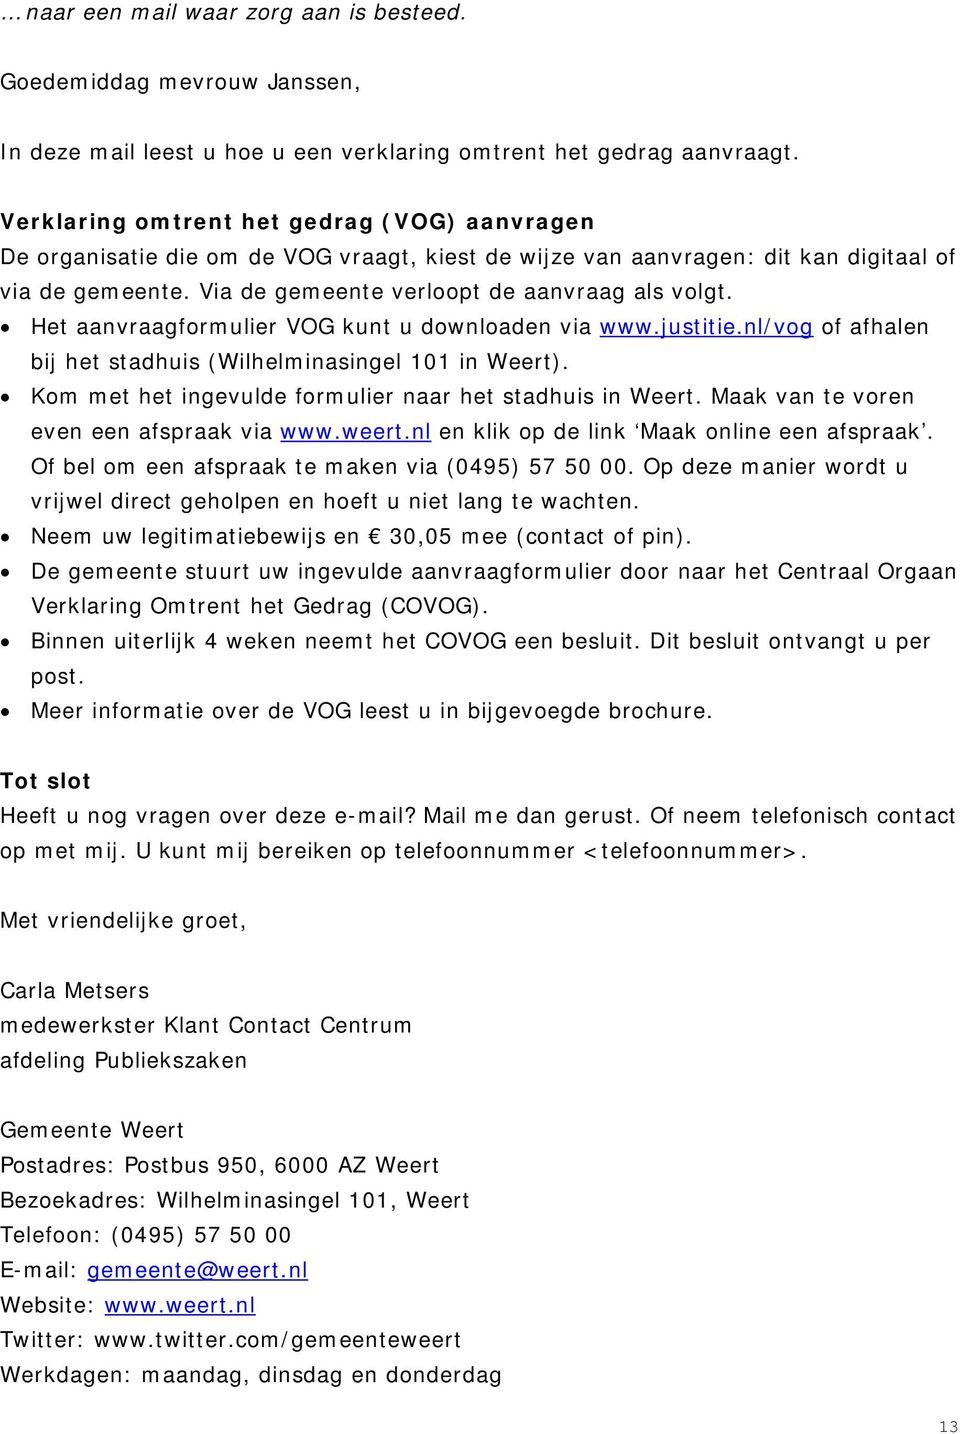 Het aanvraagformulier VOG kunt u downloaden via www.justitie.nl/vog of afhalen bij het stadhuis (Wilhelminasingel 101 in Weert). Kom met het ingevulde formulier naar het stadhuis in Weert.